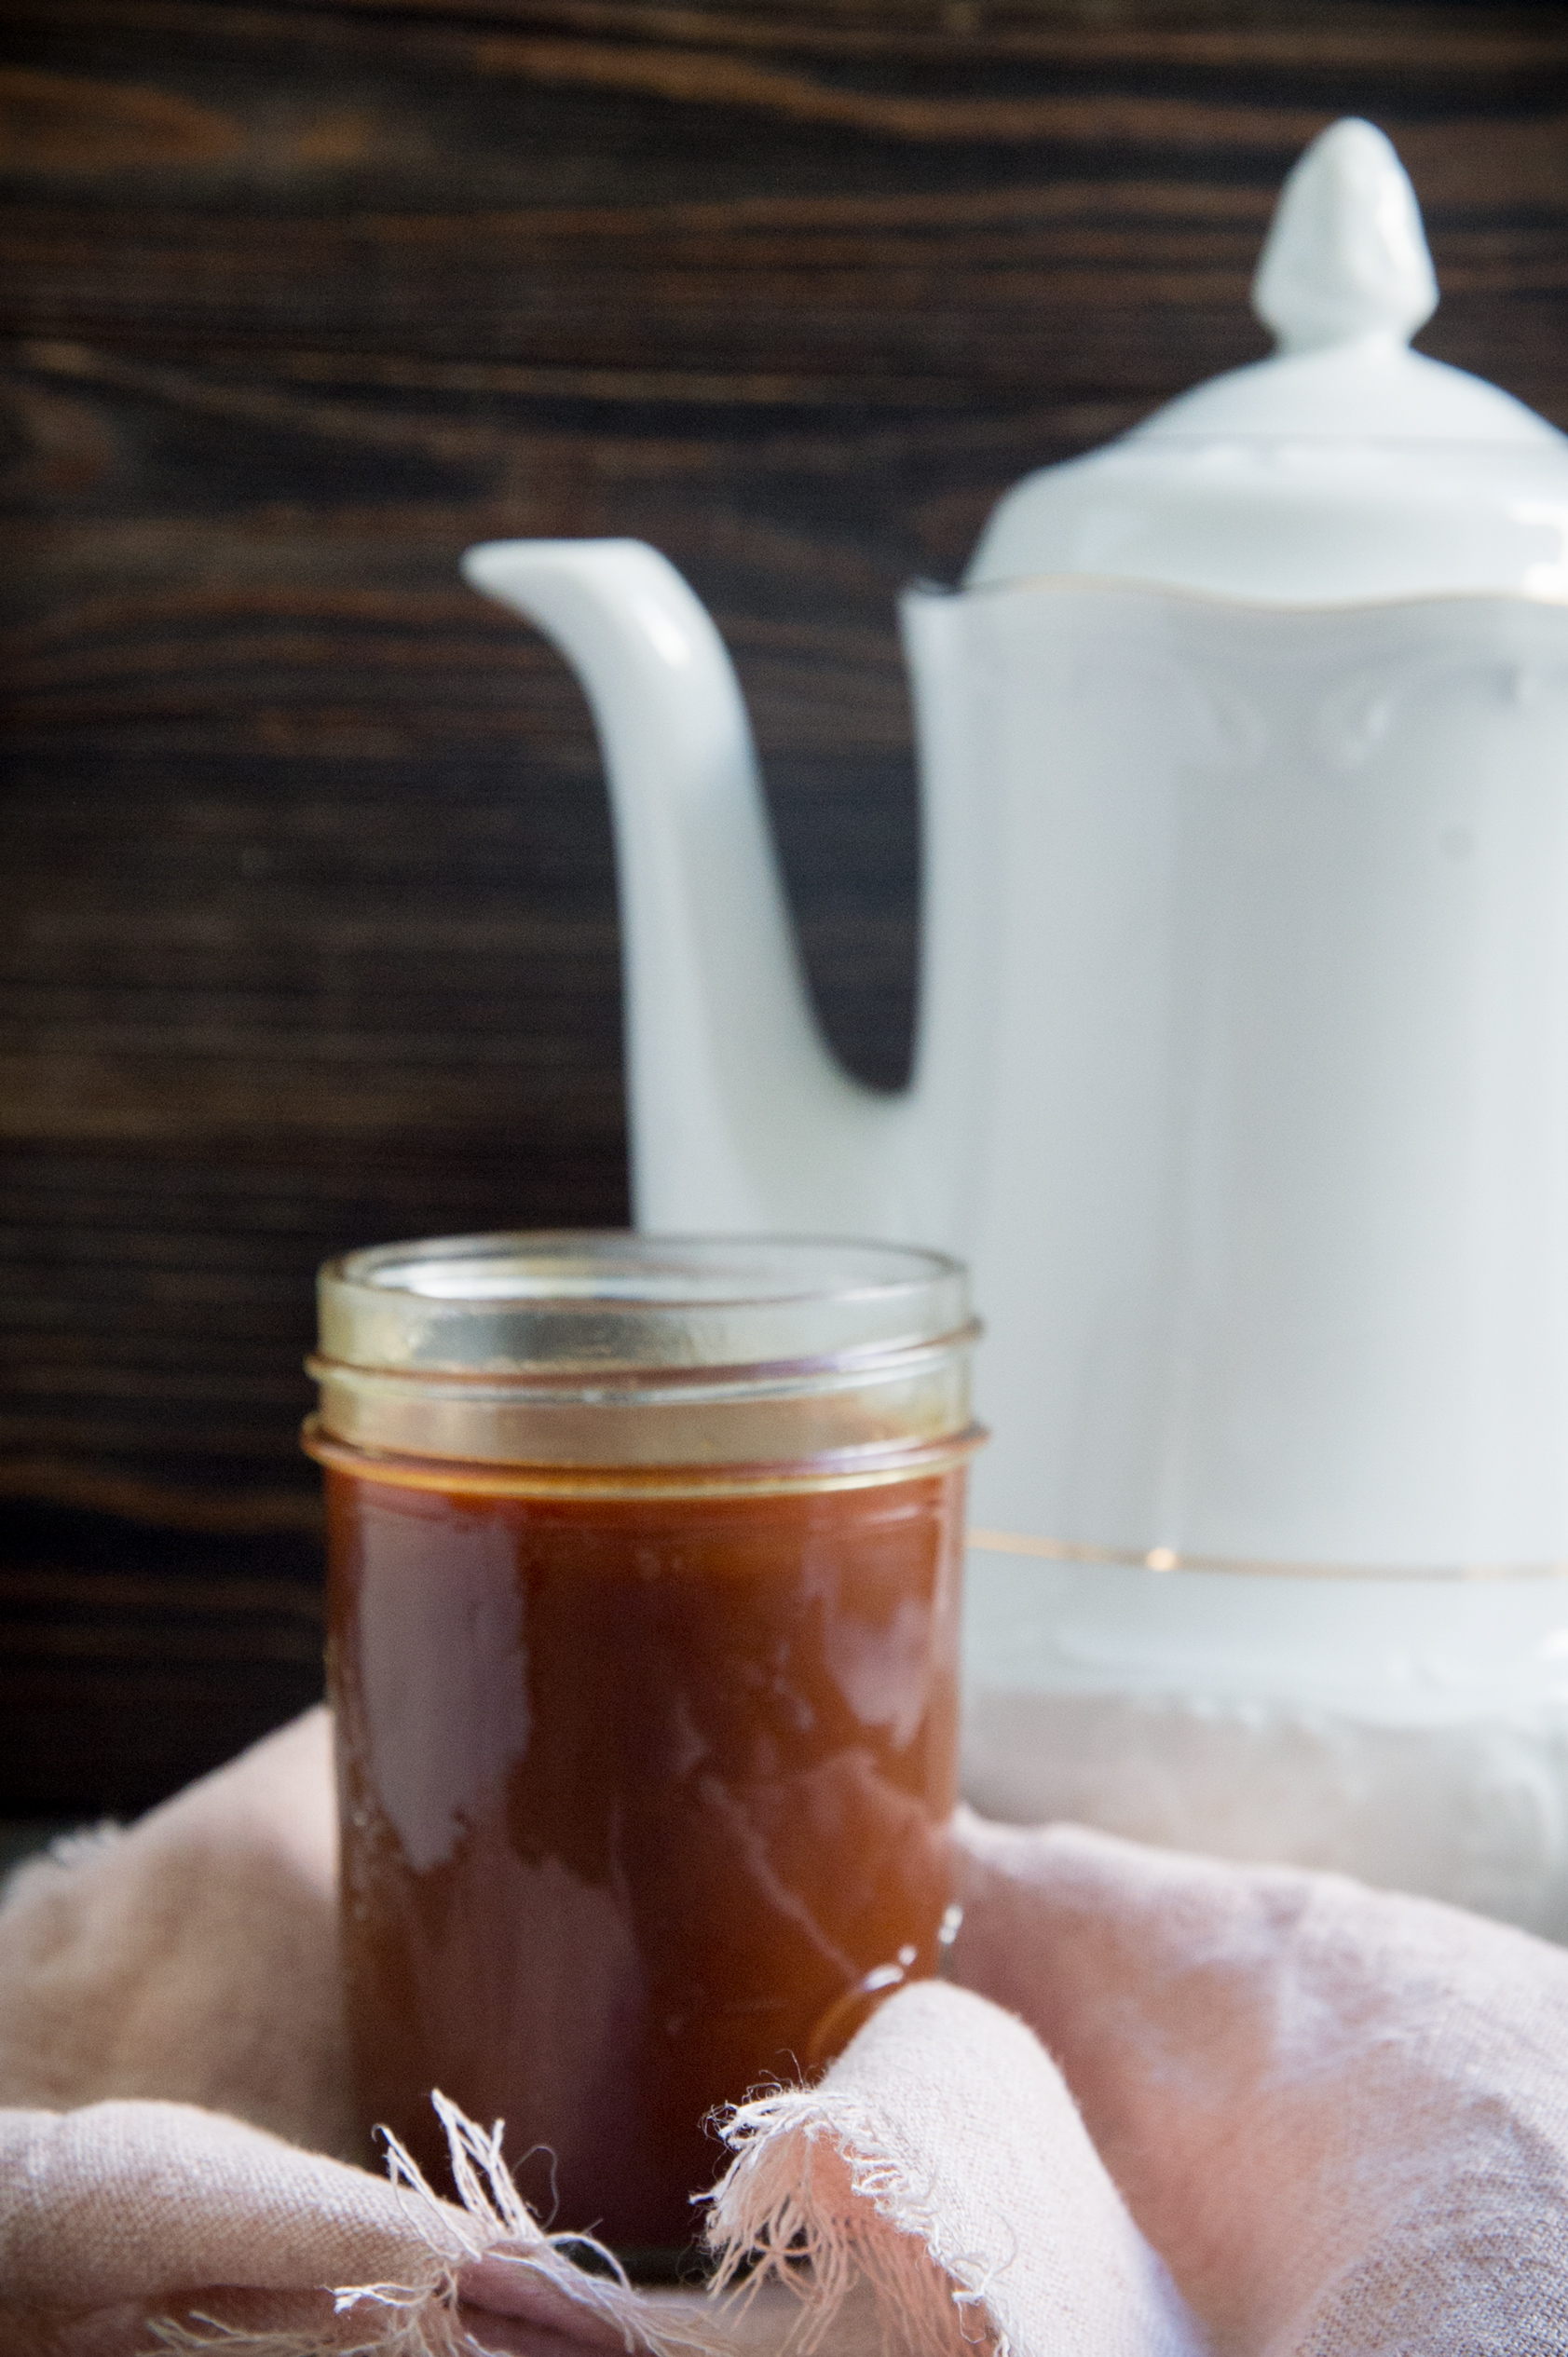 Keto Caramel sauce in a jar.